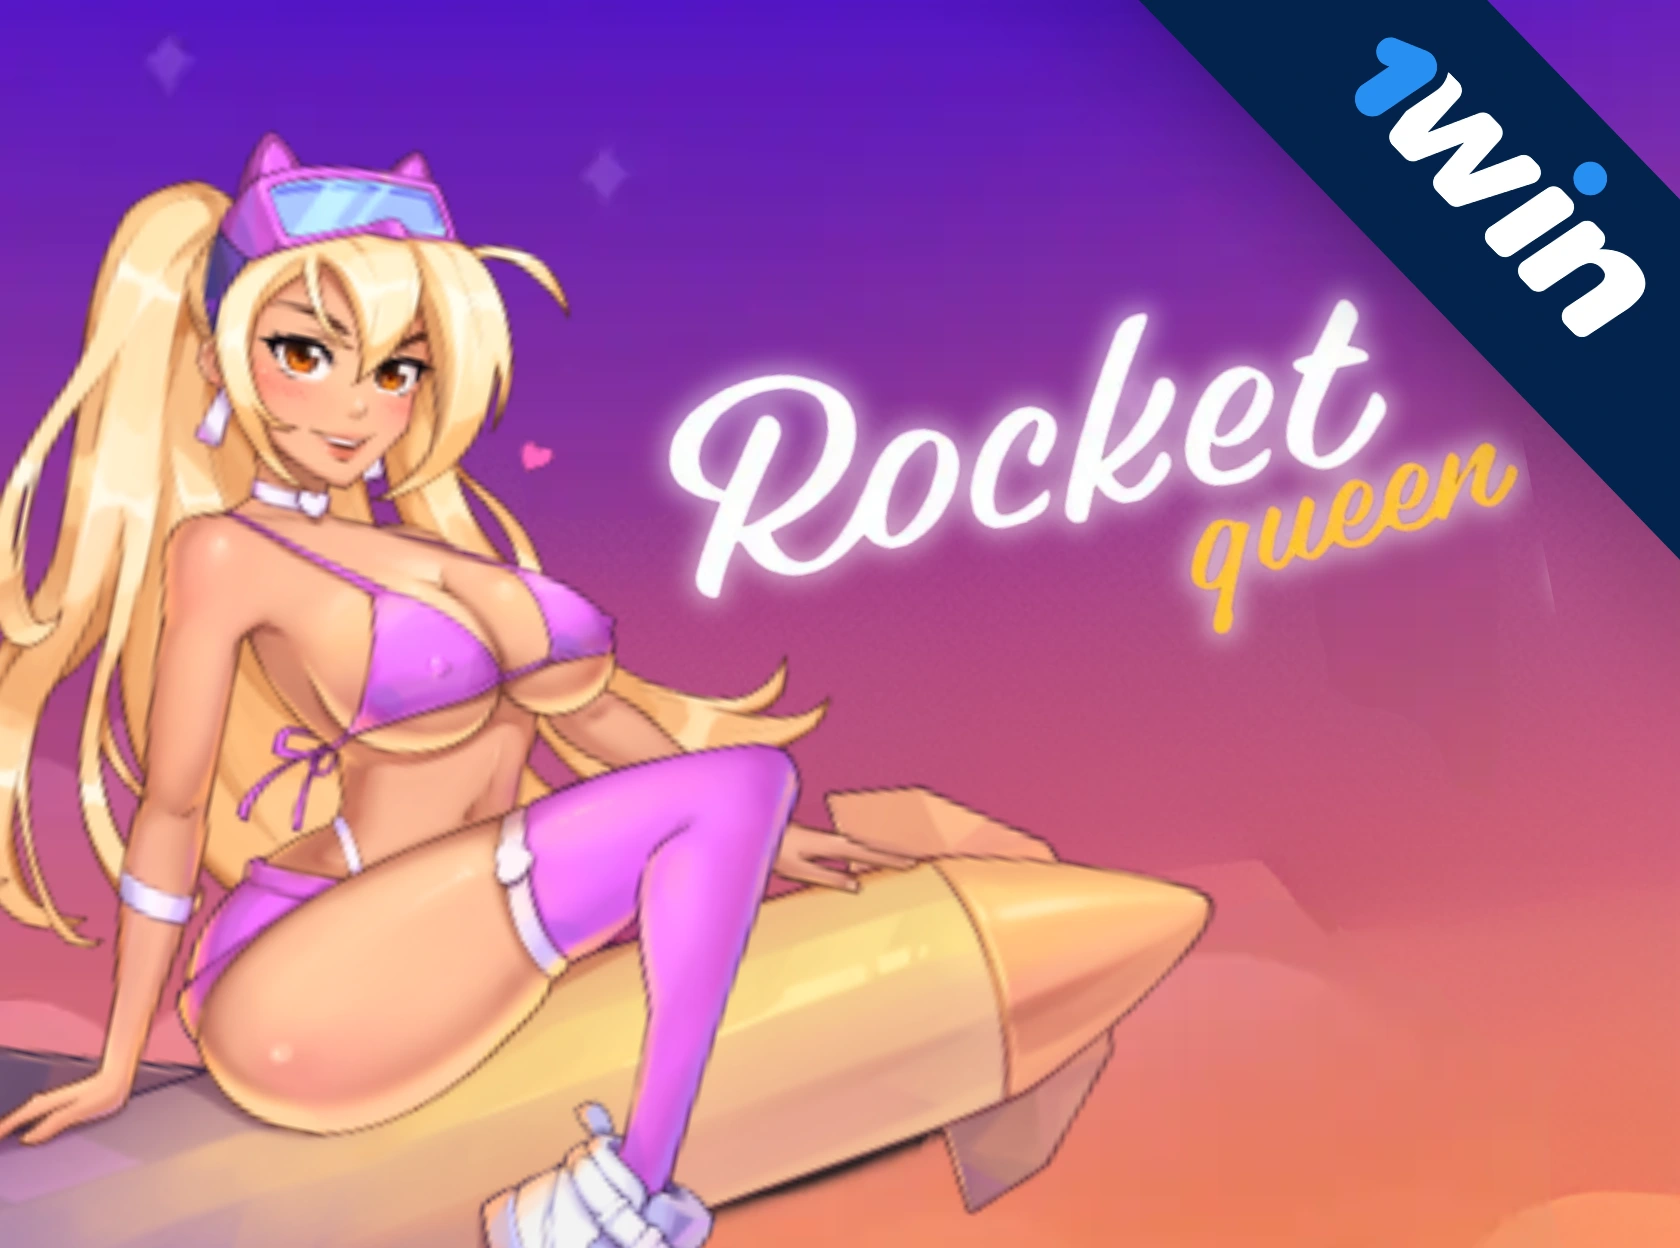 Rocket Queen - 1win की विस्फोटक हिट!